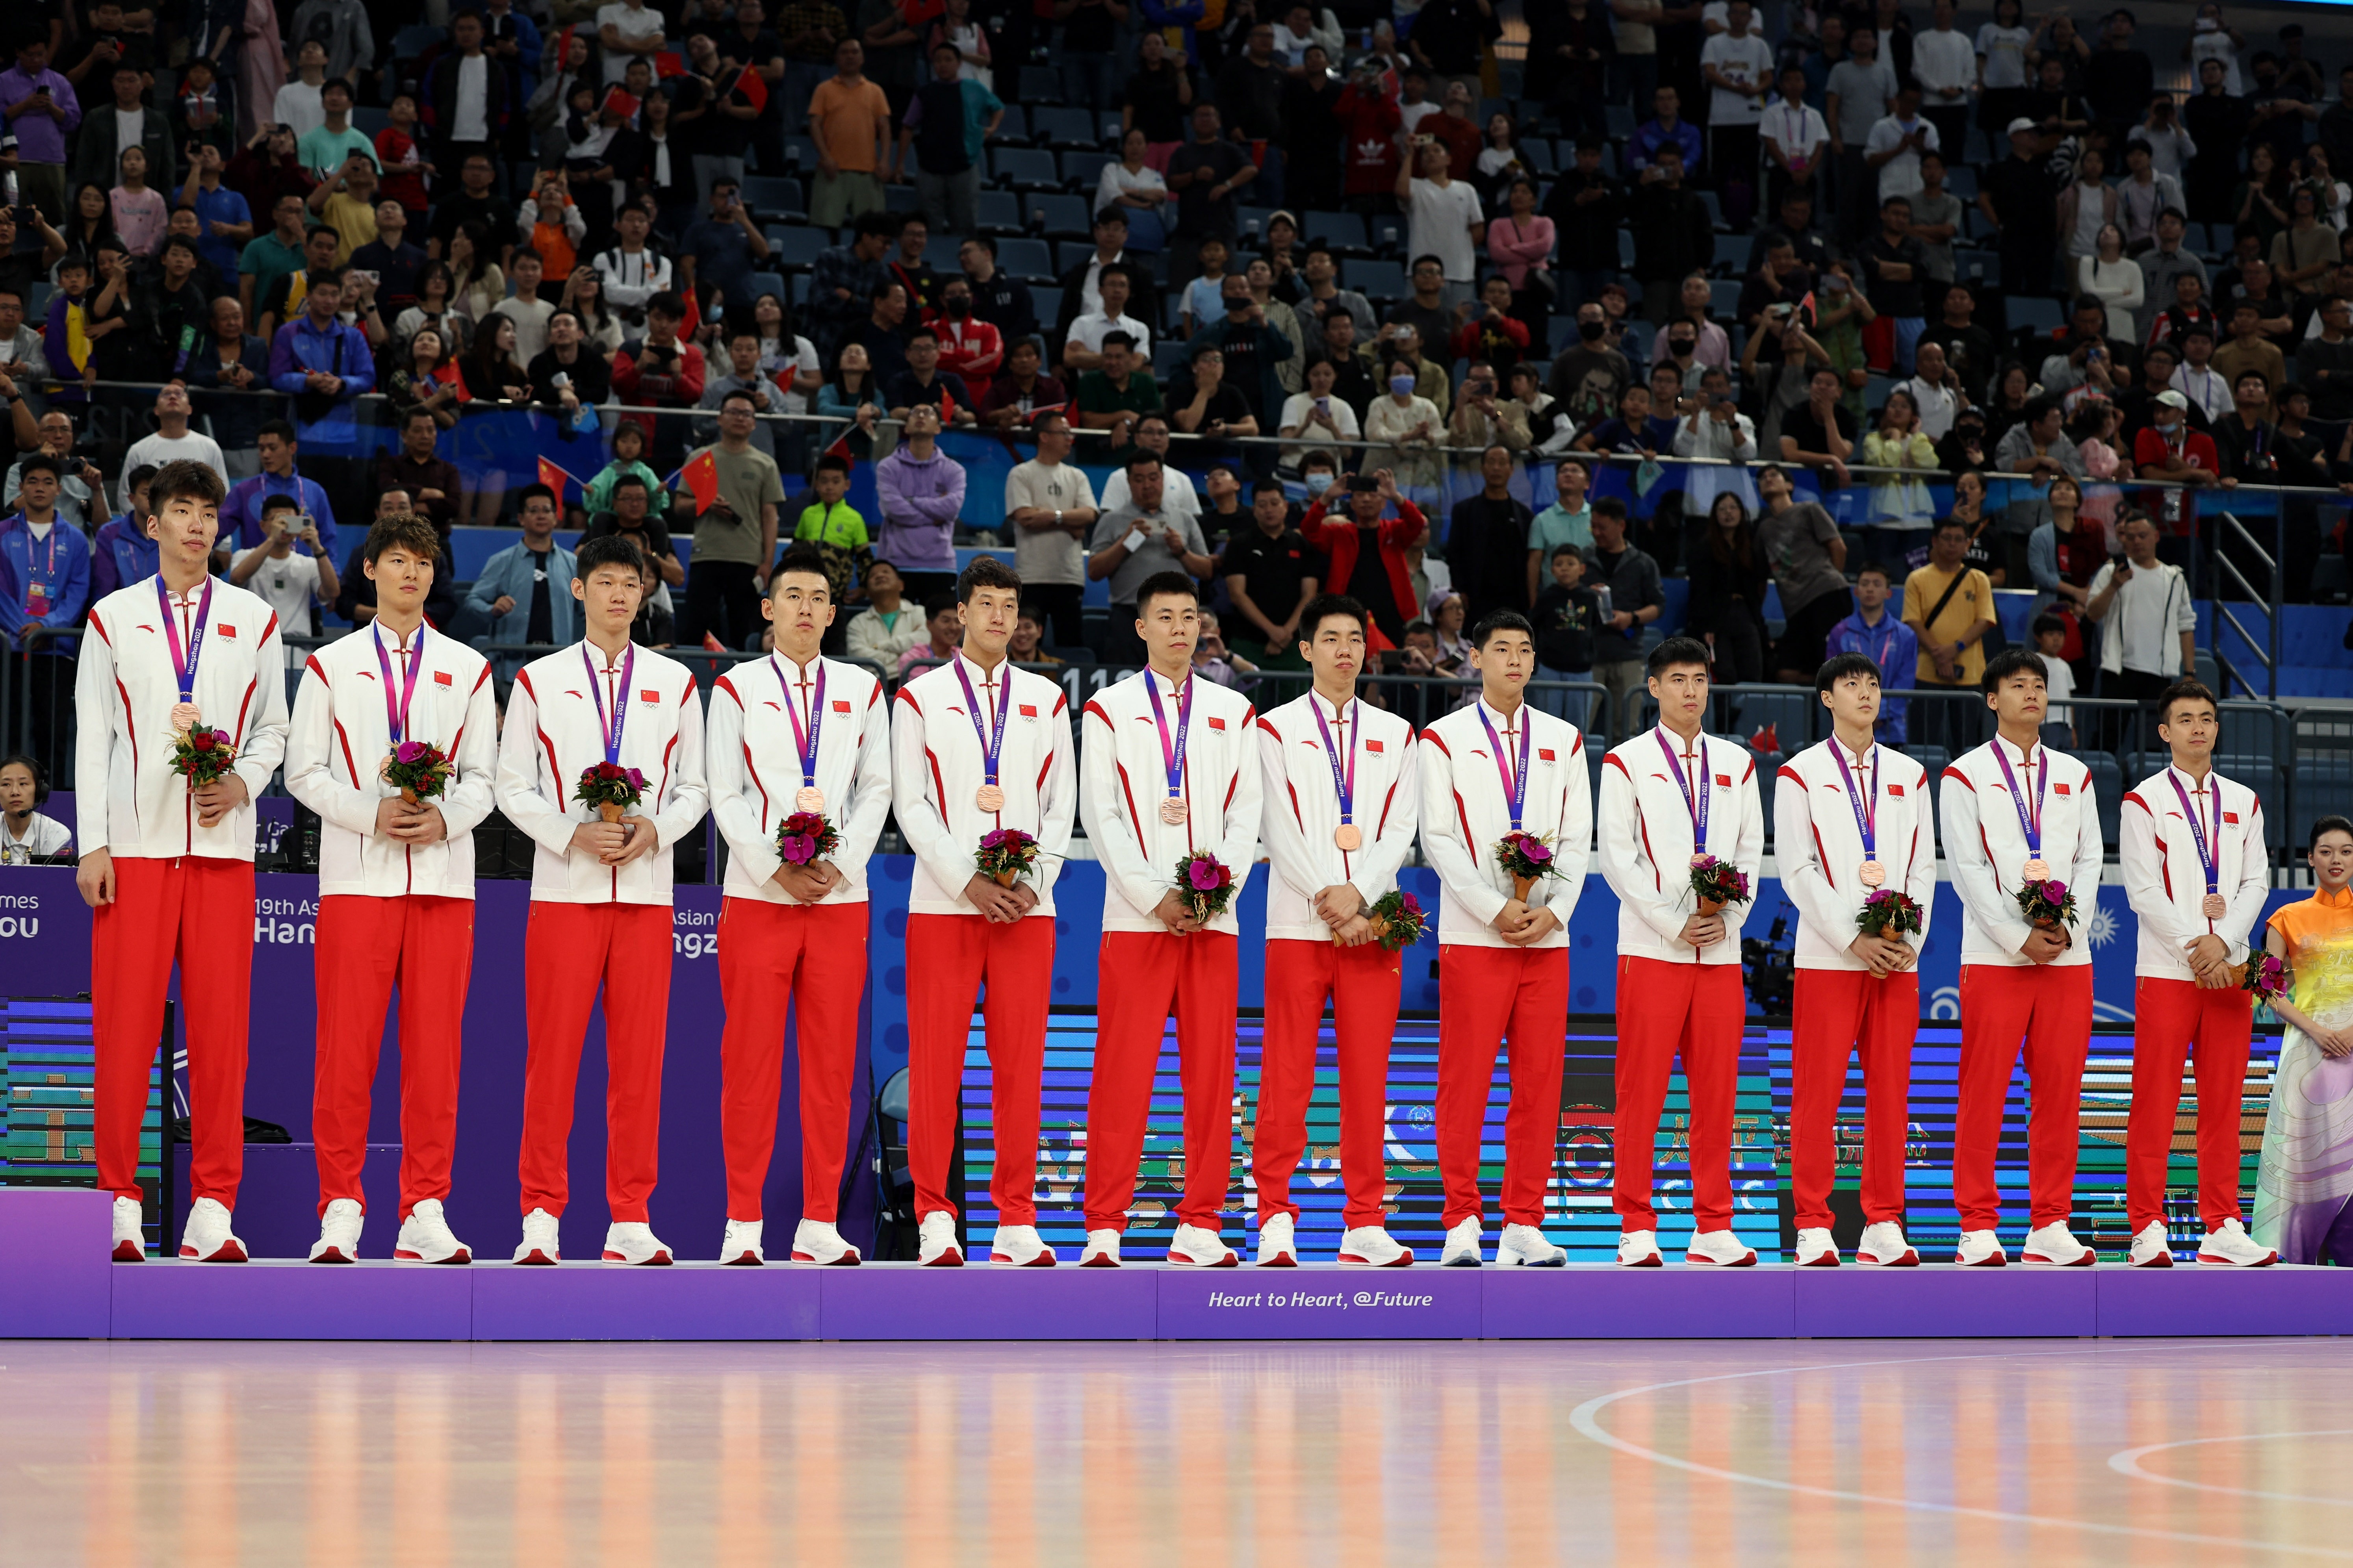 记者叶珠峰透露,多位篮球业内人士认为中国男篮冲击2028洛杉矶奥运会